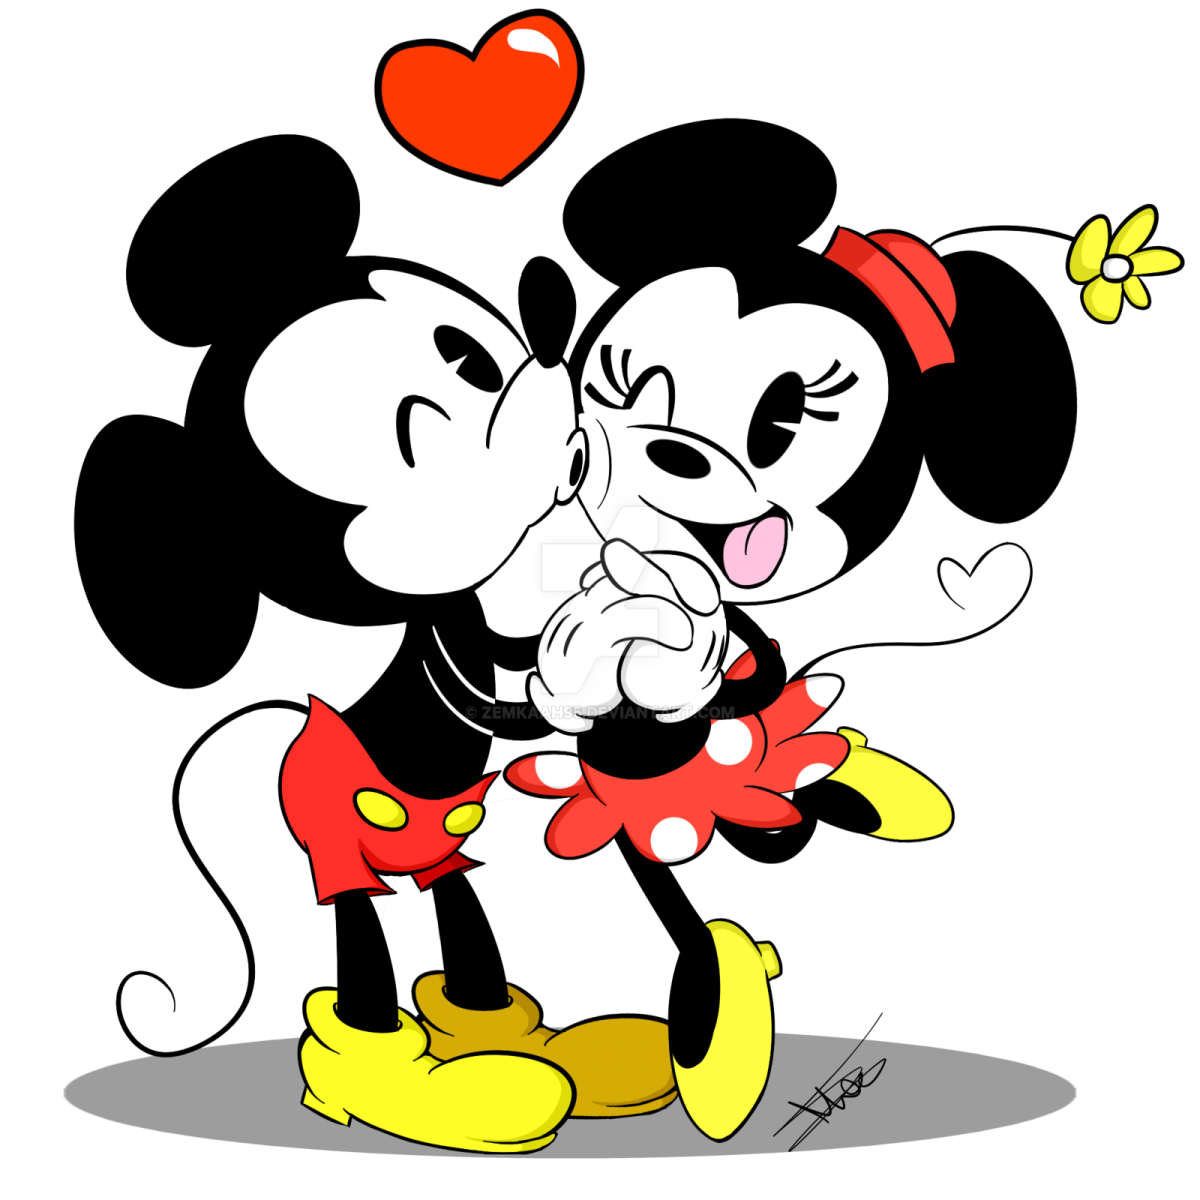 ImÃ¡gen de amor de Minnie y Mickey besandose cuando eran niÃ±os